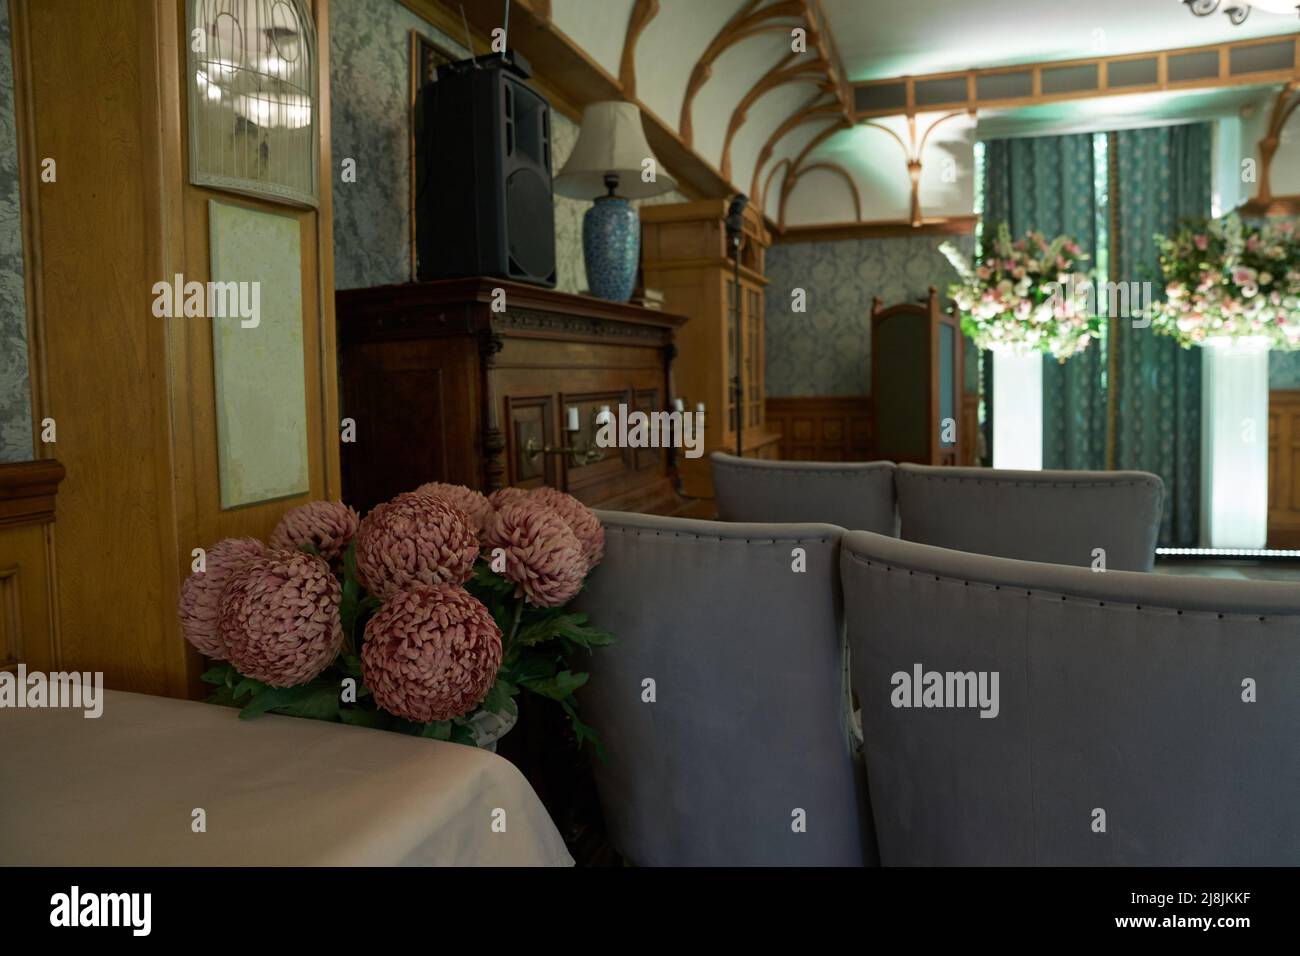 Teil eines schönen vintage Halle für eine Hochzeitszeremonie.Elegantes Interieur-Design mit Vintage-Stil Blumen. Hochwertige Fotos Stockfoto